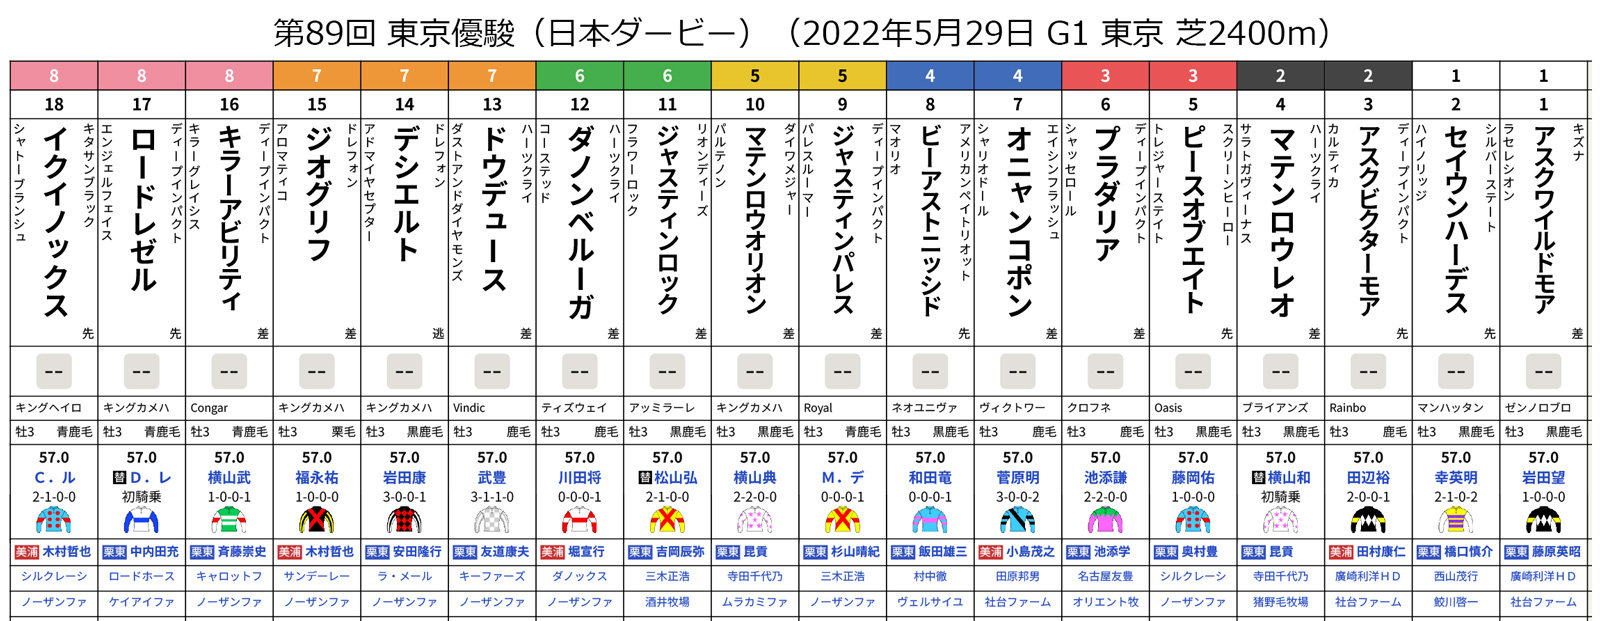 【日本ダービー 2022 枠順】ジオグリフは7枠15番、ドウデュースは7枠13番、イクイノックスは8枠18番 | 競馬まとめ - netkeiba.com - netkeiba.com